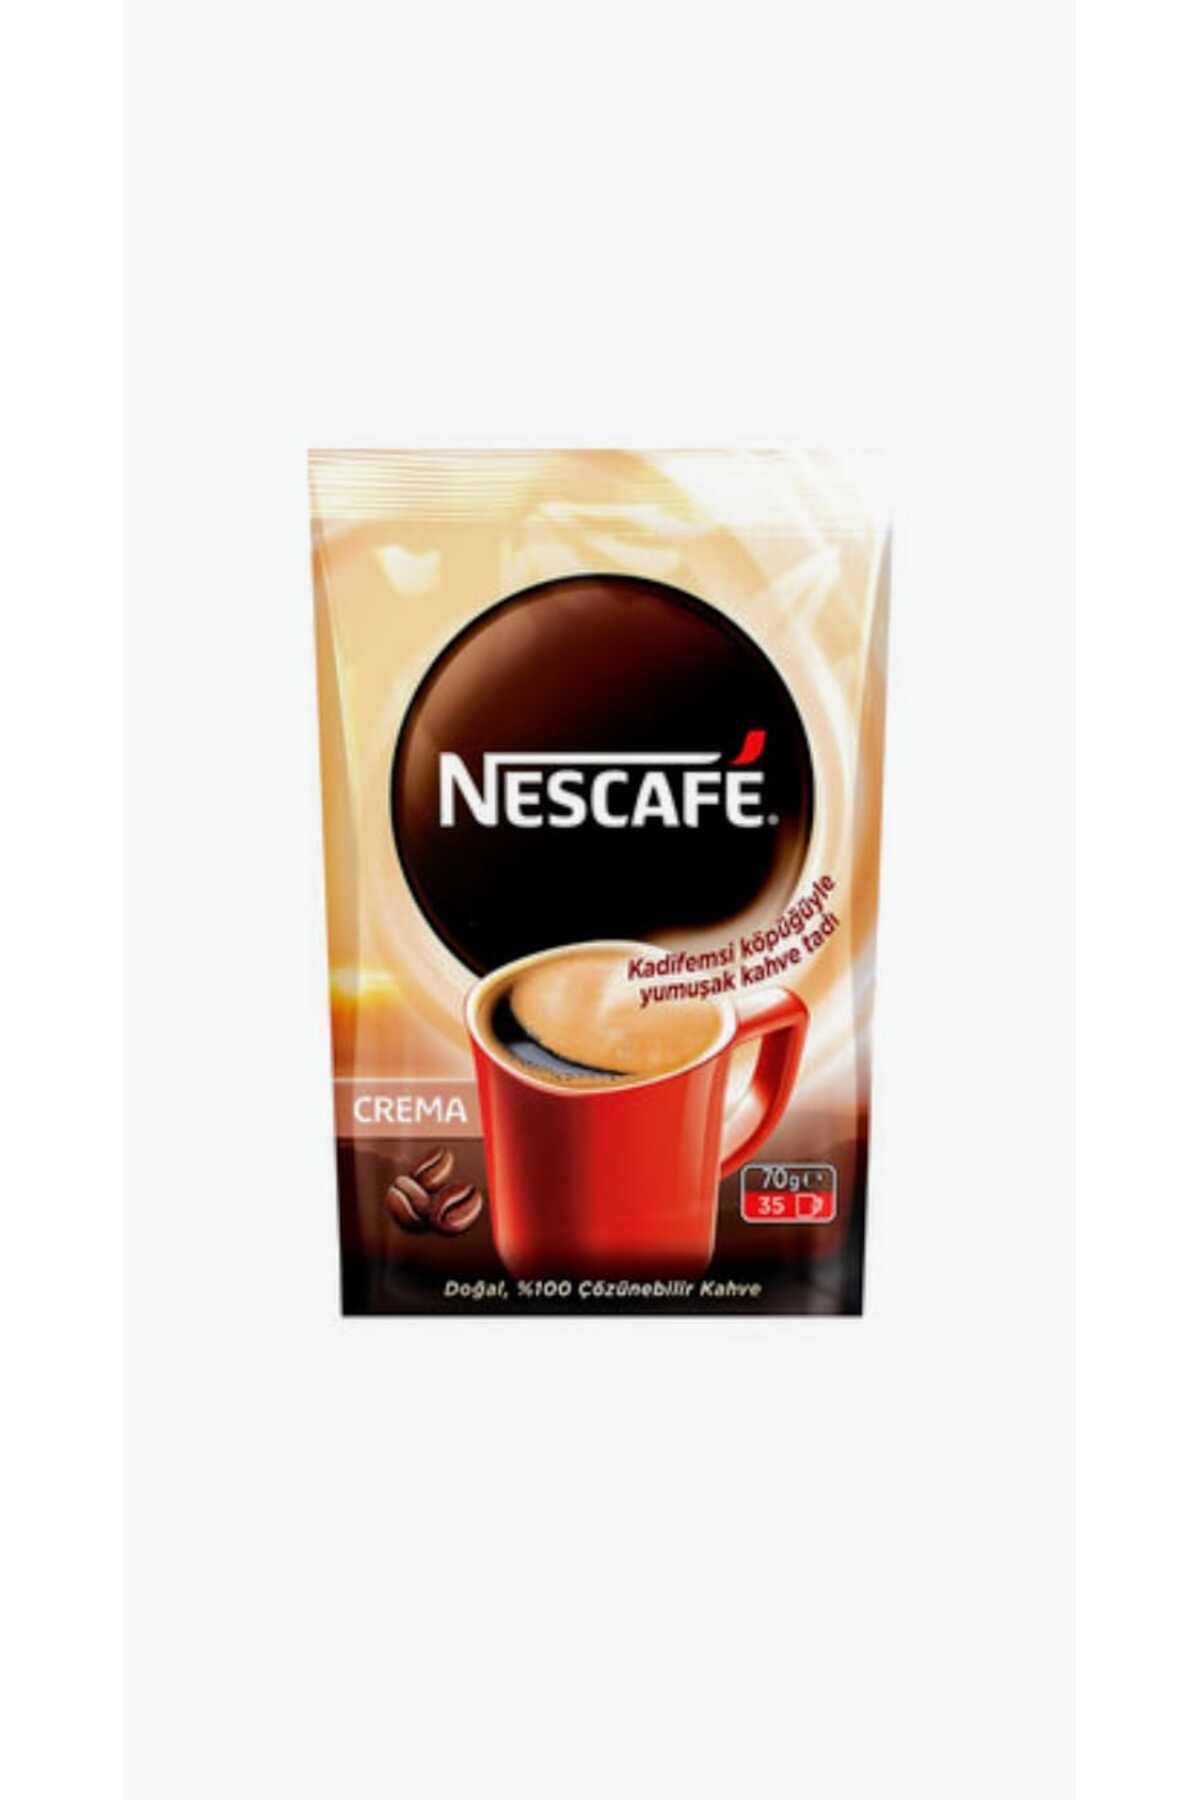 Nestle Nescafe Crema Ekonomik Paket 70g